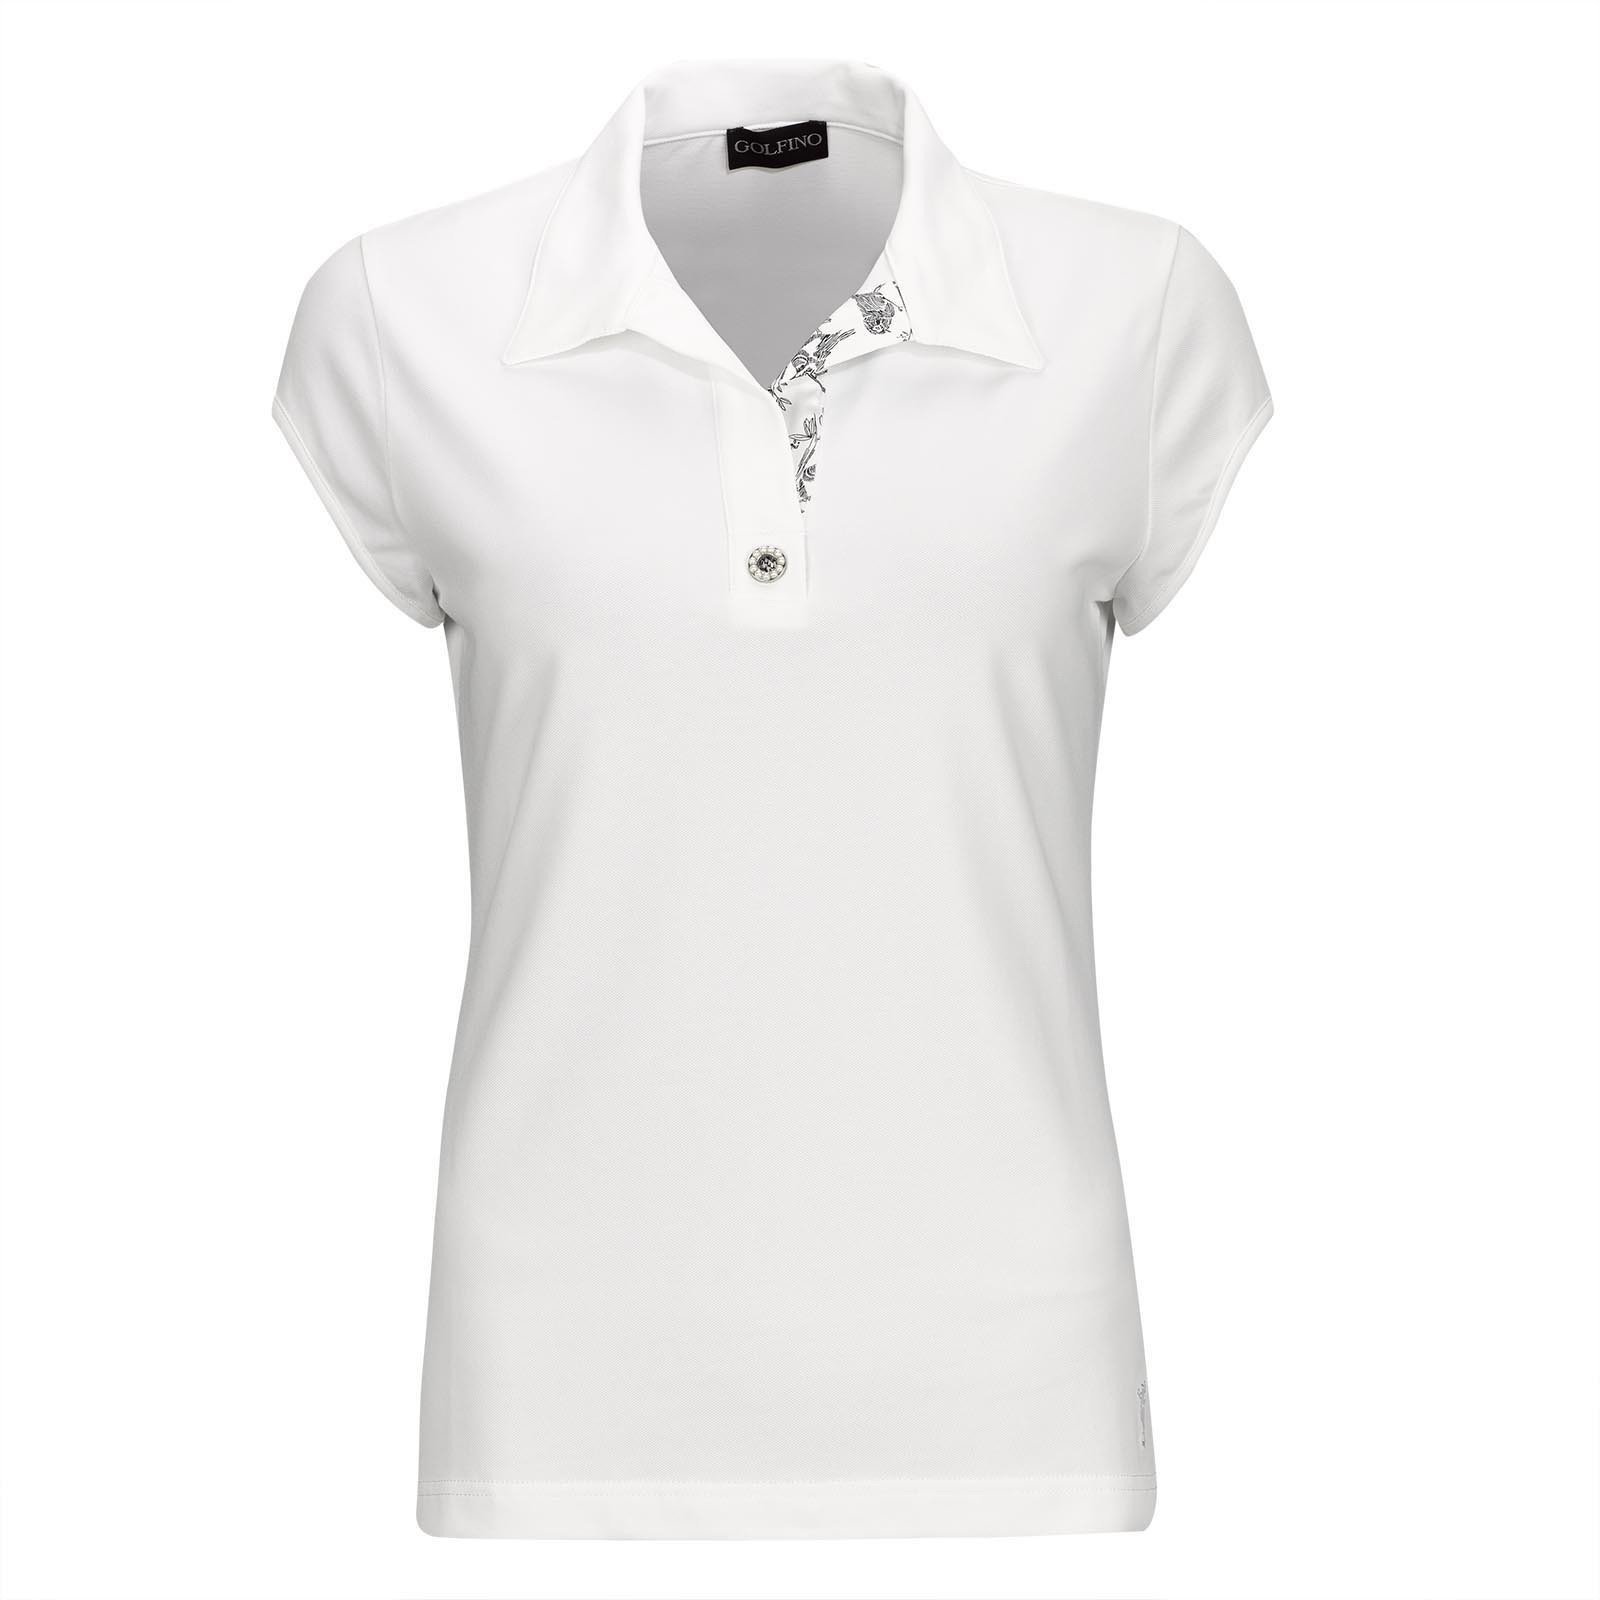 Pikétröja Golfino Pearls Cap Sleeve Womens Polo Shirt White 34